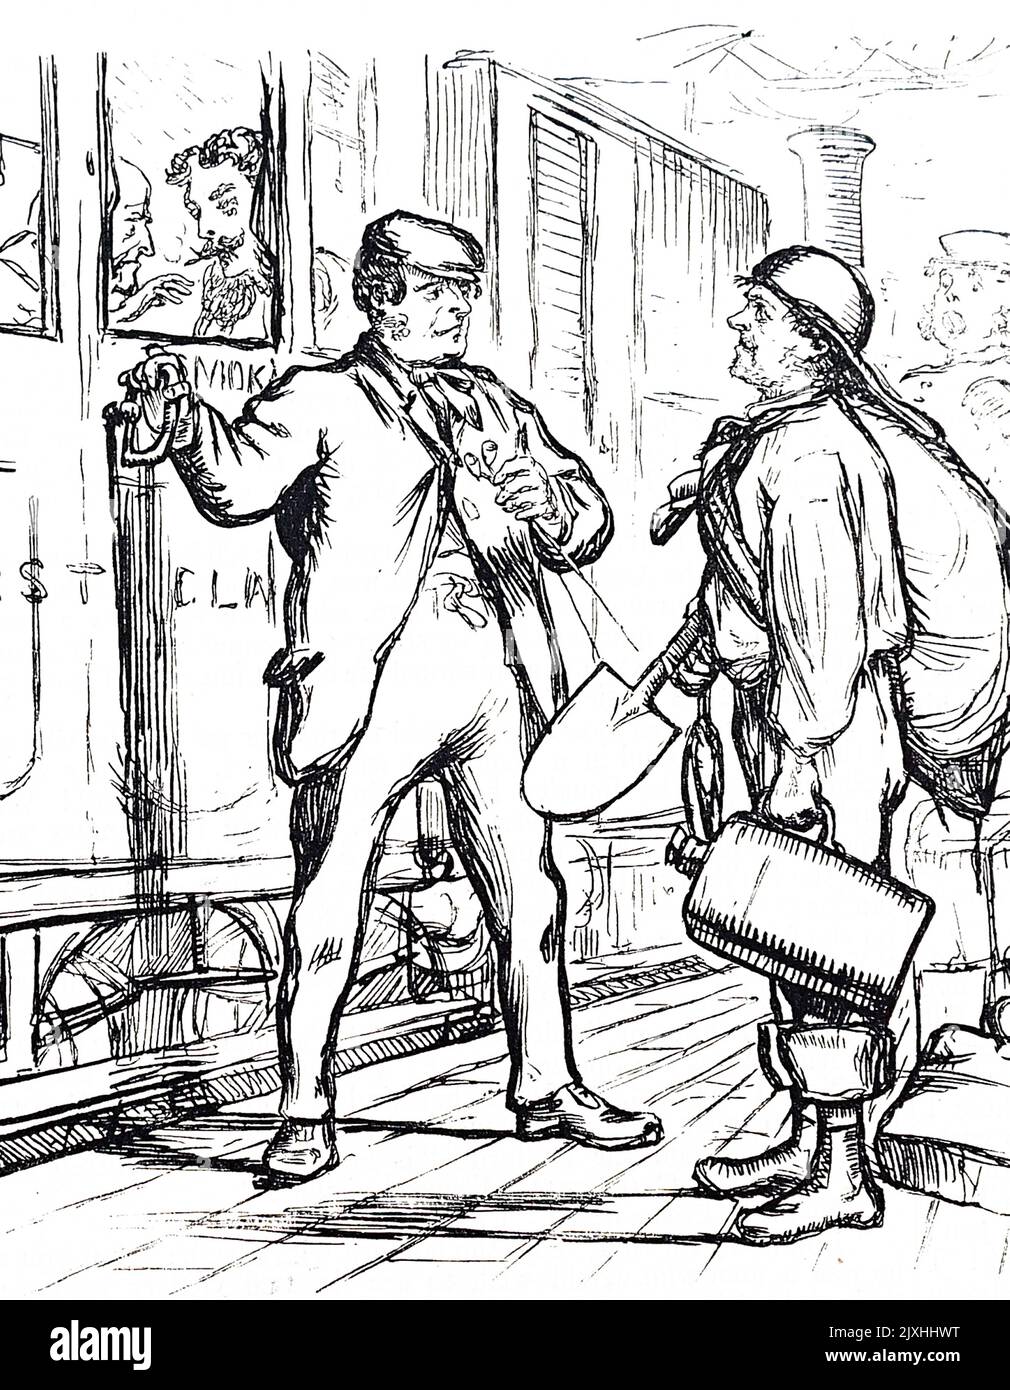 Karikatur, die einen Soldaten zeigt, der sich mit all seinen Habseligkeiten bereit machte, in einen Zug zu steigen. Datiert aus dem 19.. Jahrhundert Stockfoto